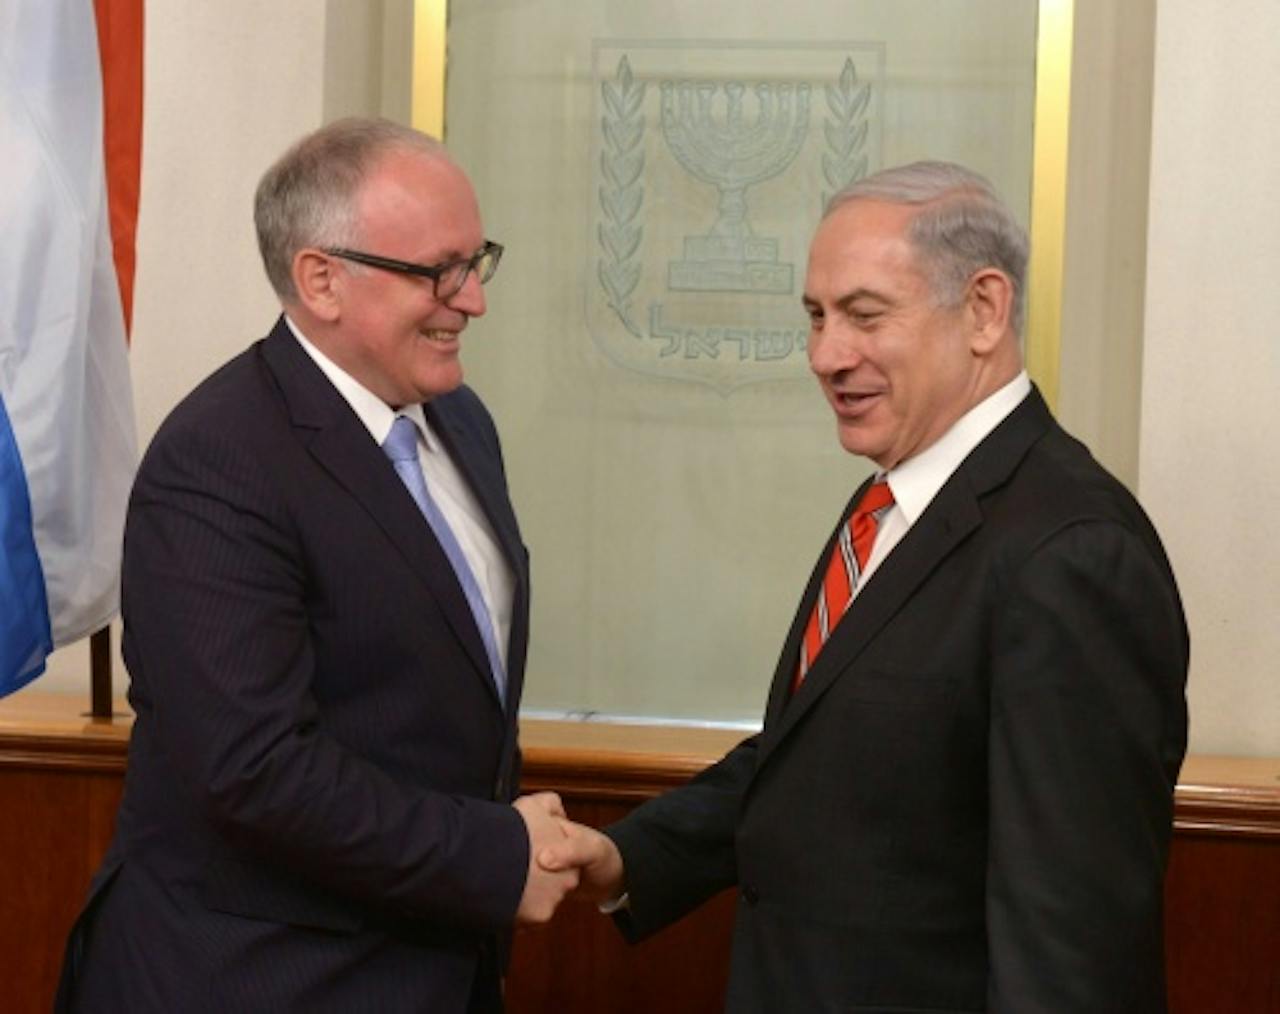 Frans Timmermans (L) met Benjamin Netanyahu. EPA